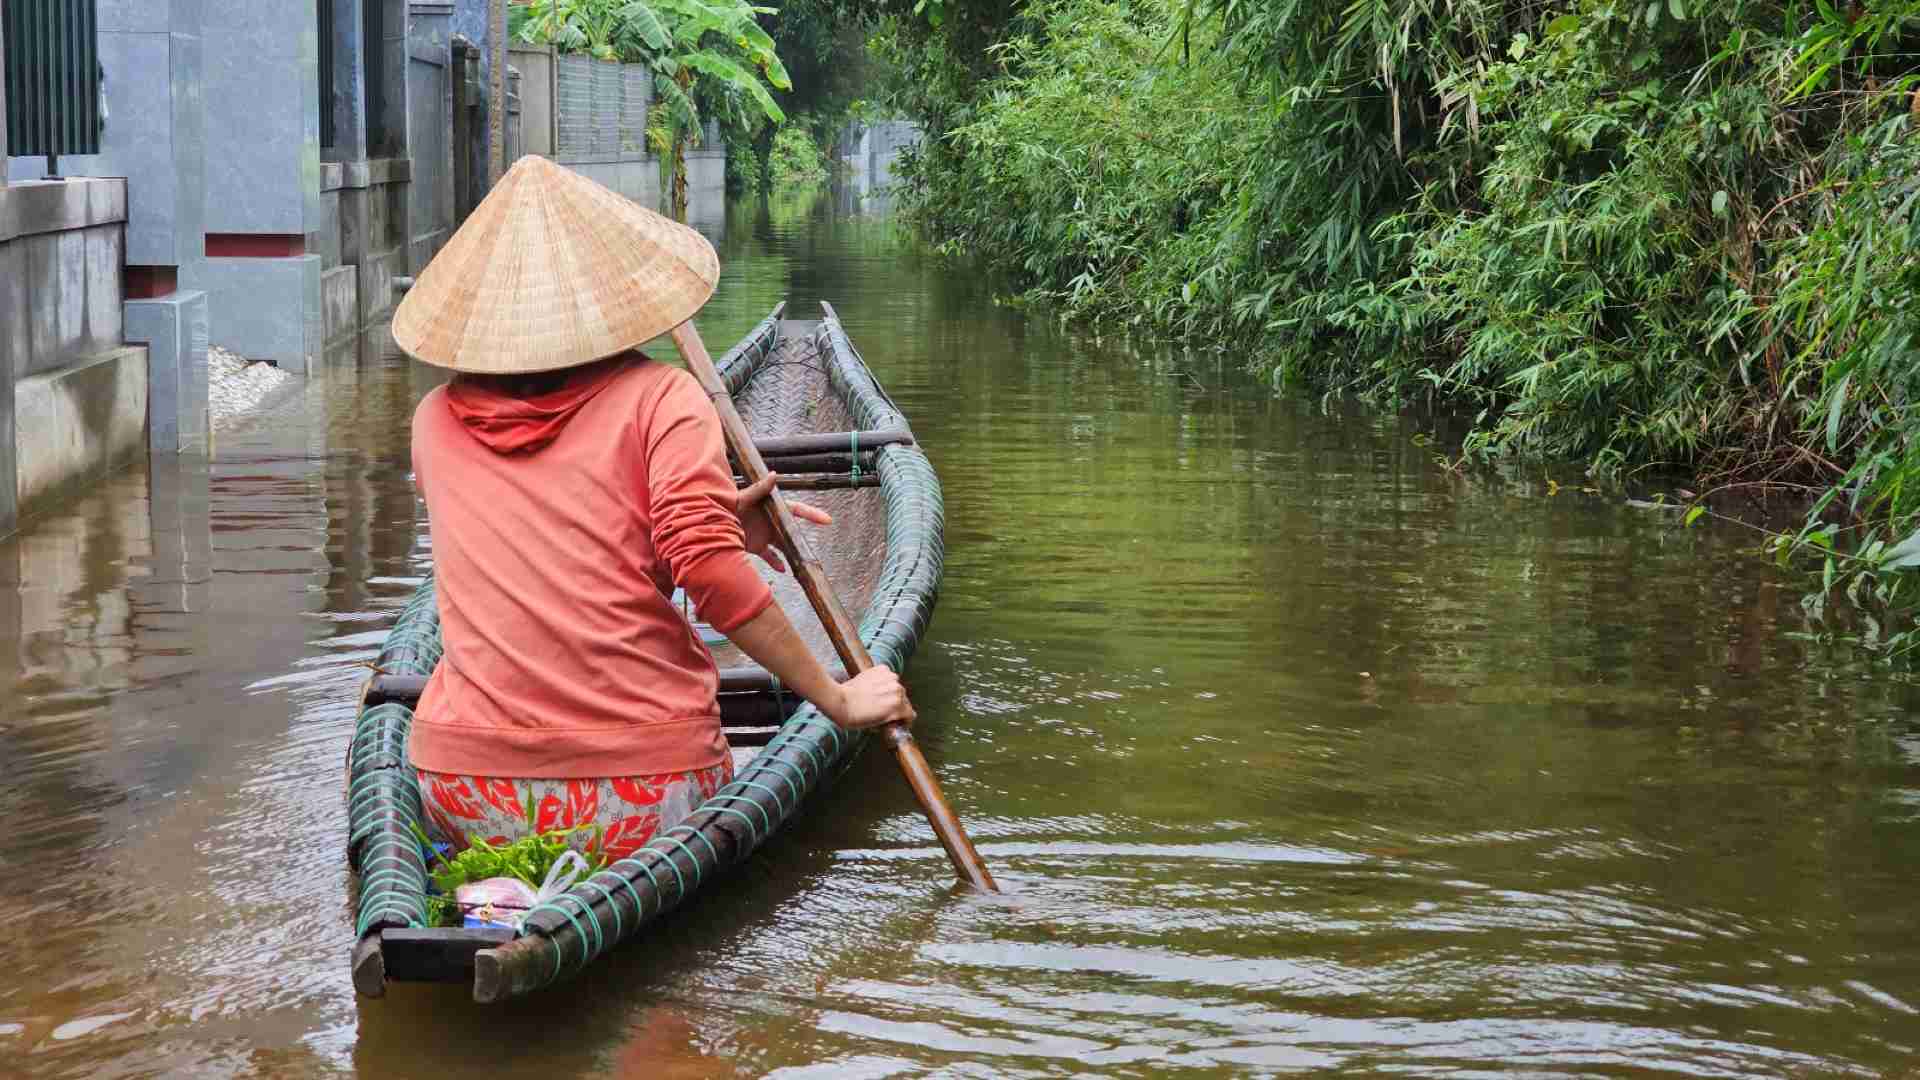 Đợt này mực nước còn ít hơn so với mọi năm nhưng hầu hết đường sá tại làng Tùy Xuân đã bị nhấn chìm, người dân không thể di chuyển bằng phương tiện nào khác ngoài thuyền, ghe. 